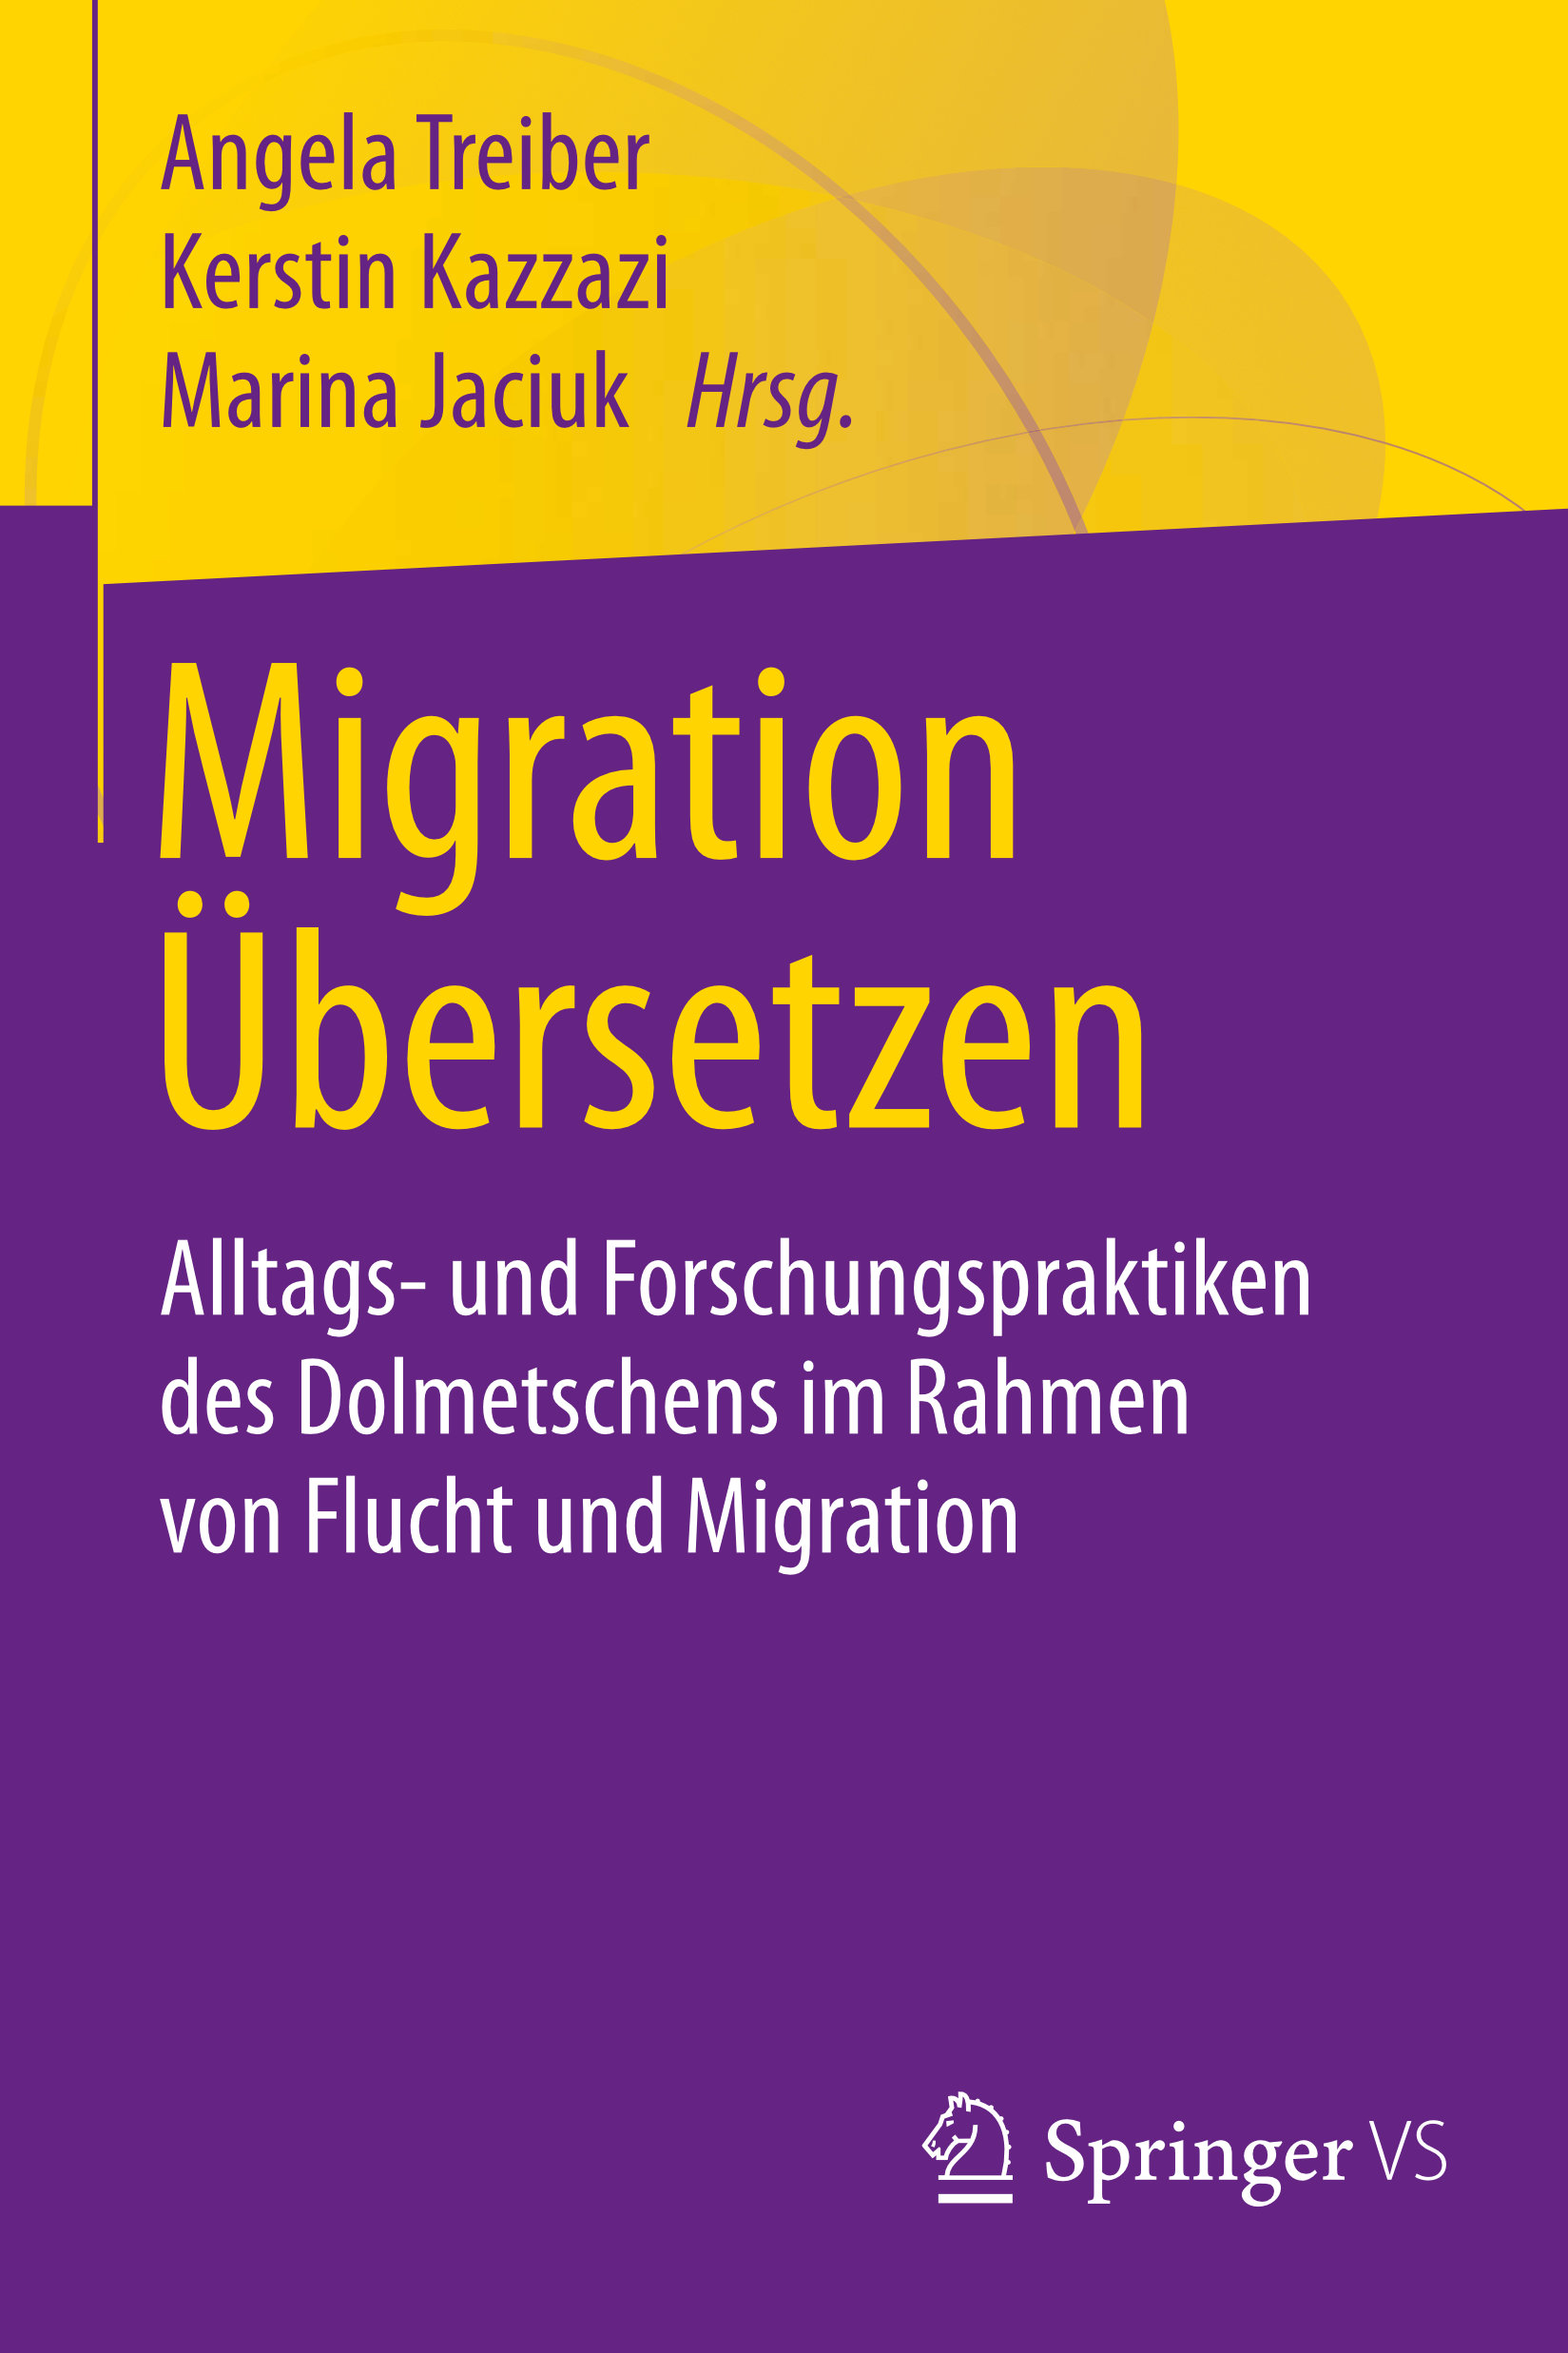 Publikation: Migration Übersetzen